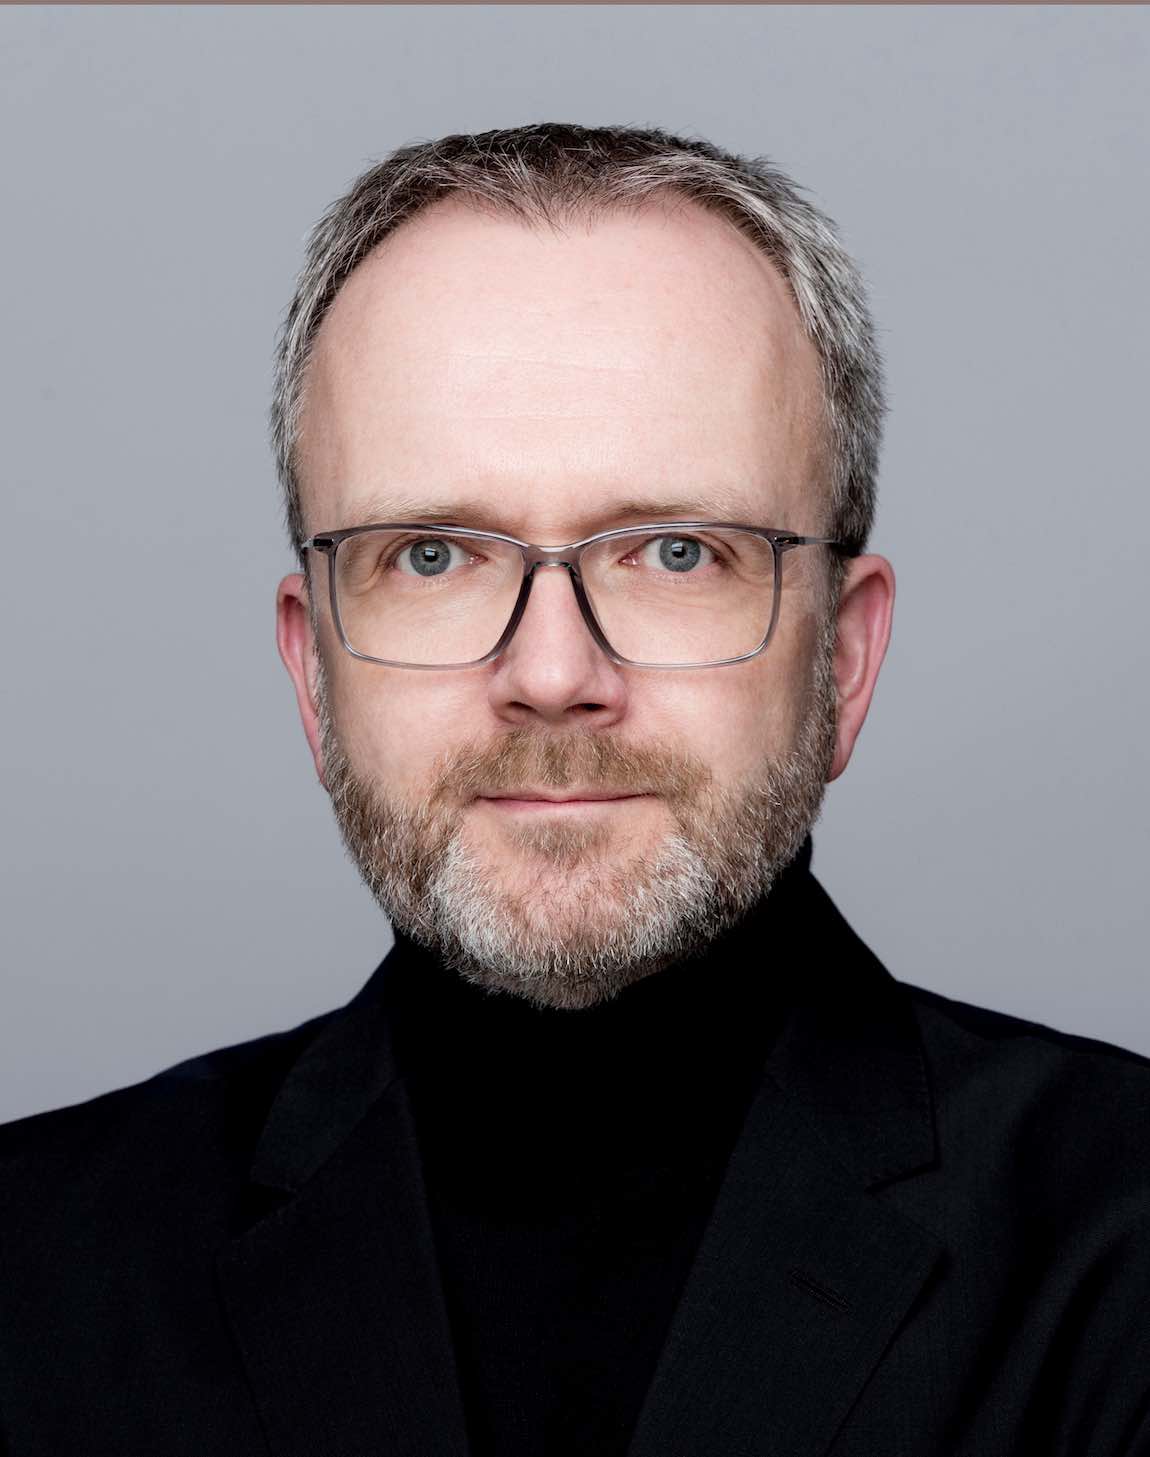 Porträt von Björn Kaspring, agof